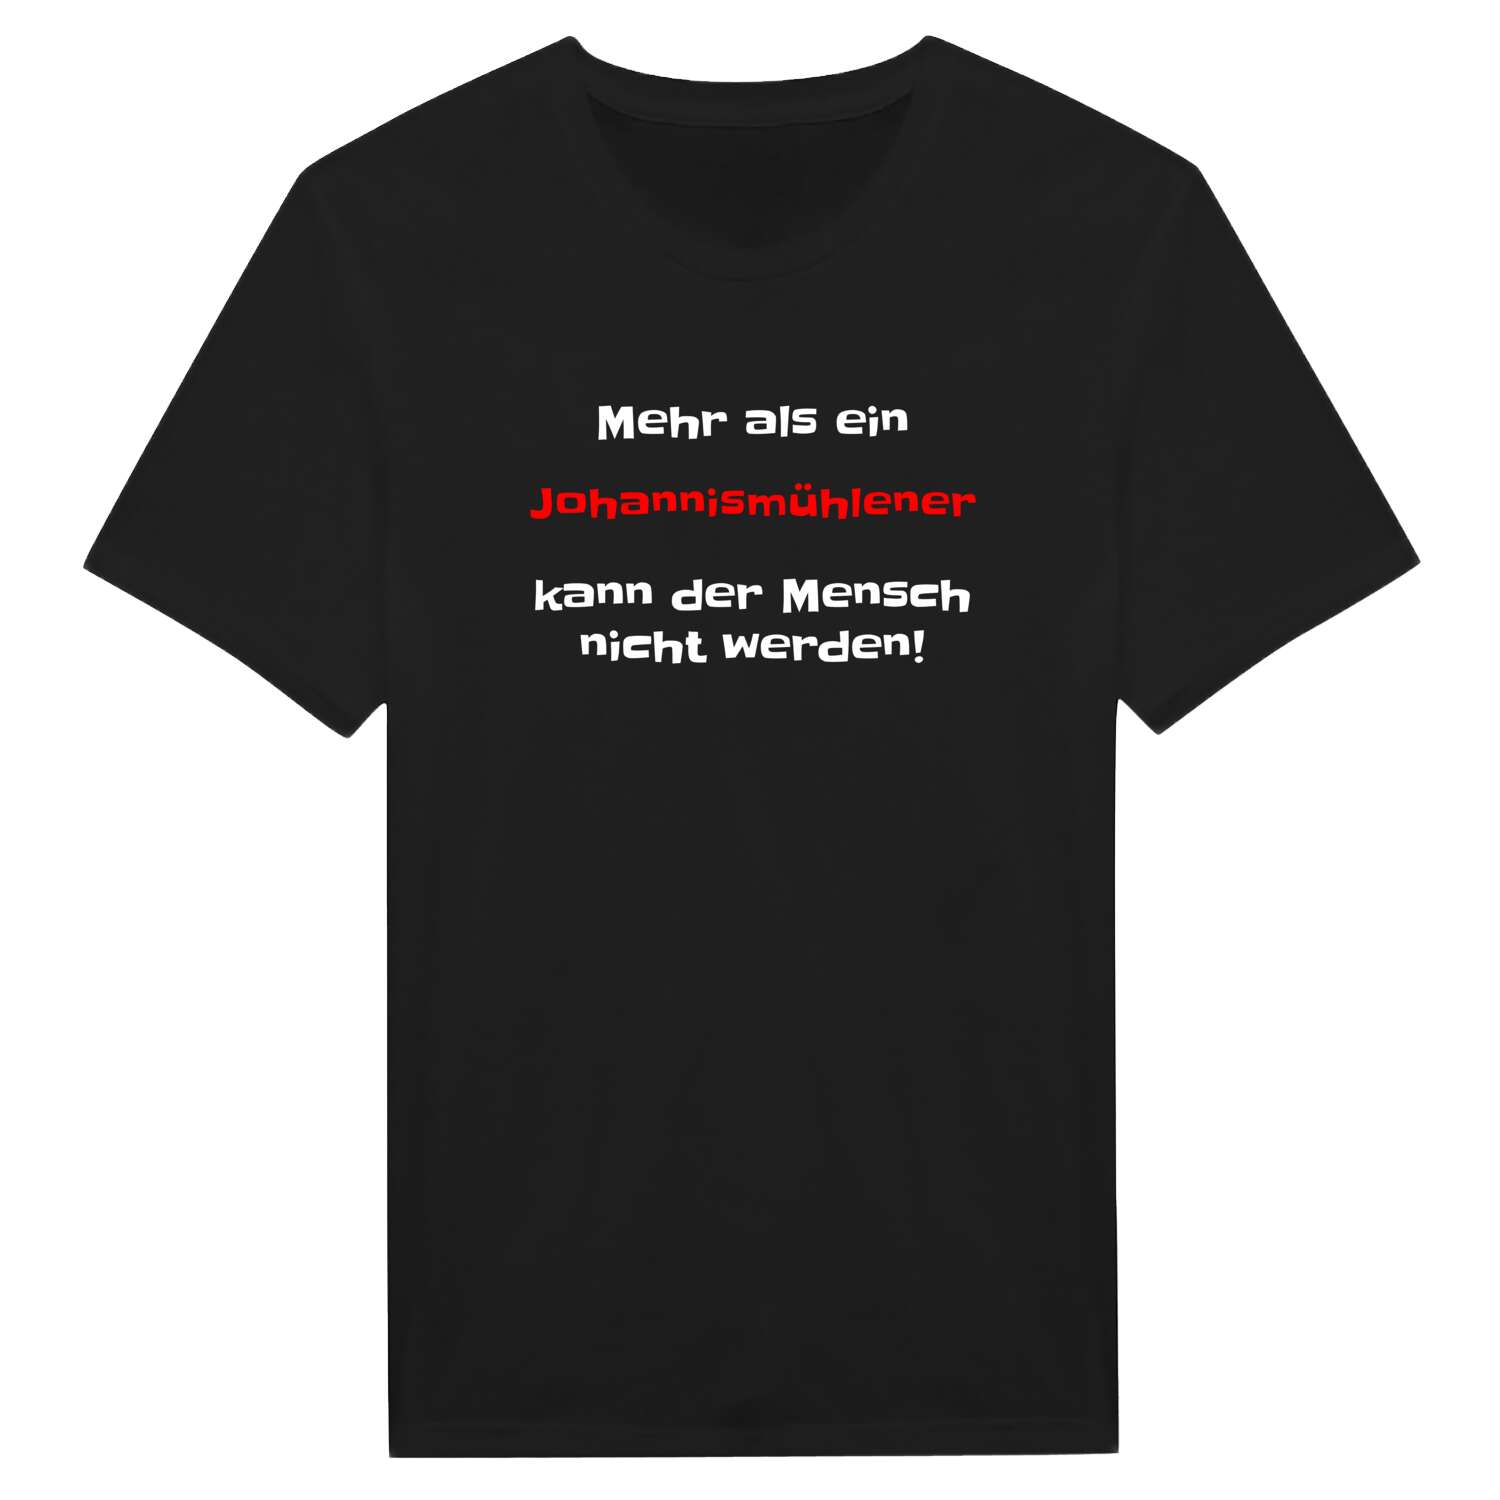 Johannismühle T-Shirt »Mehr als ein«